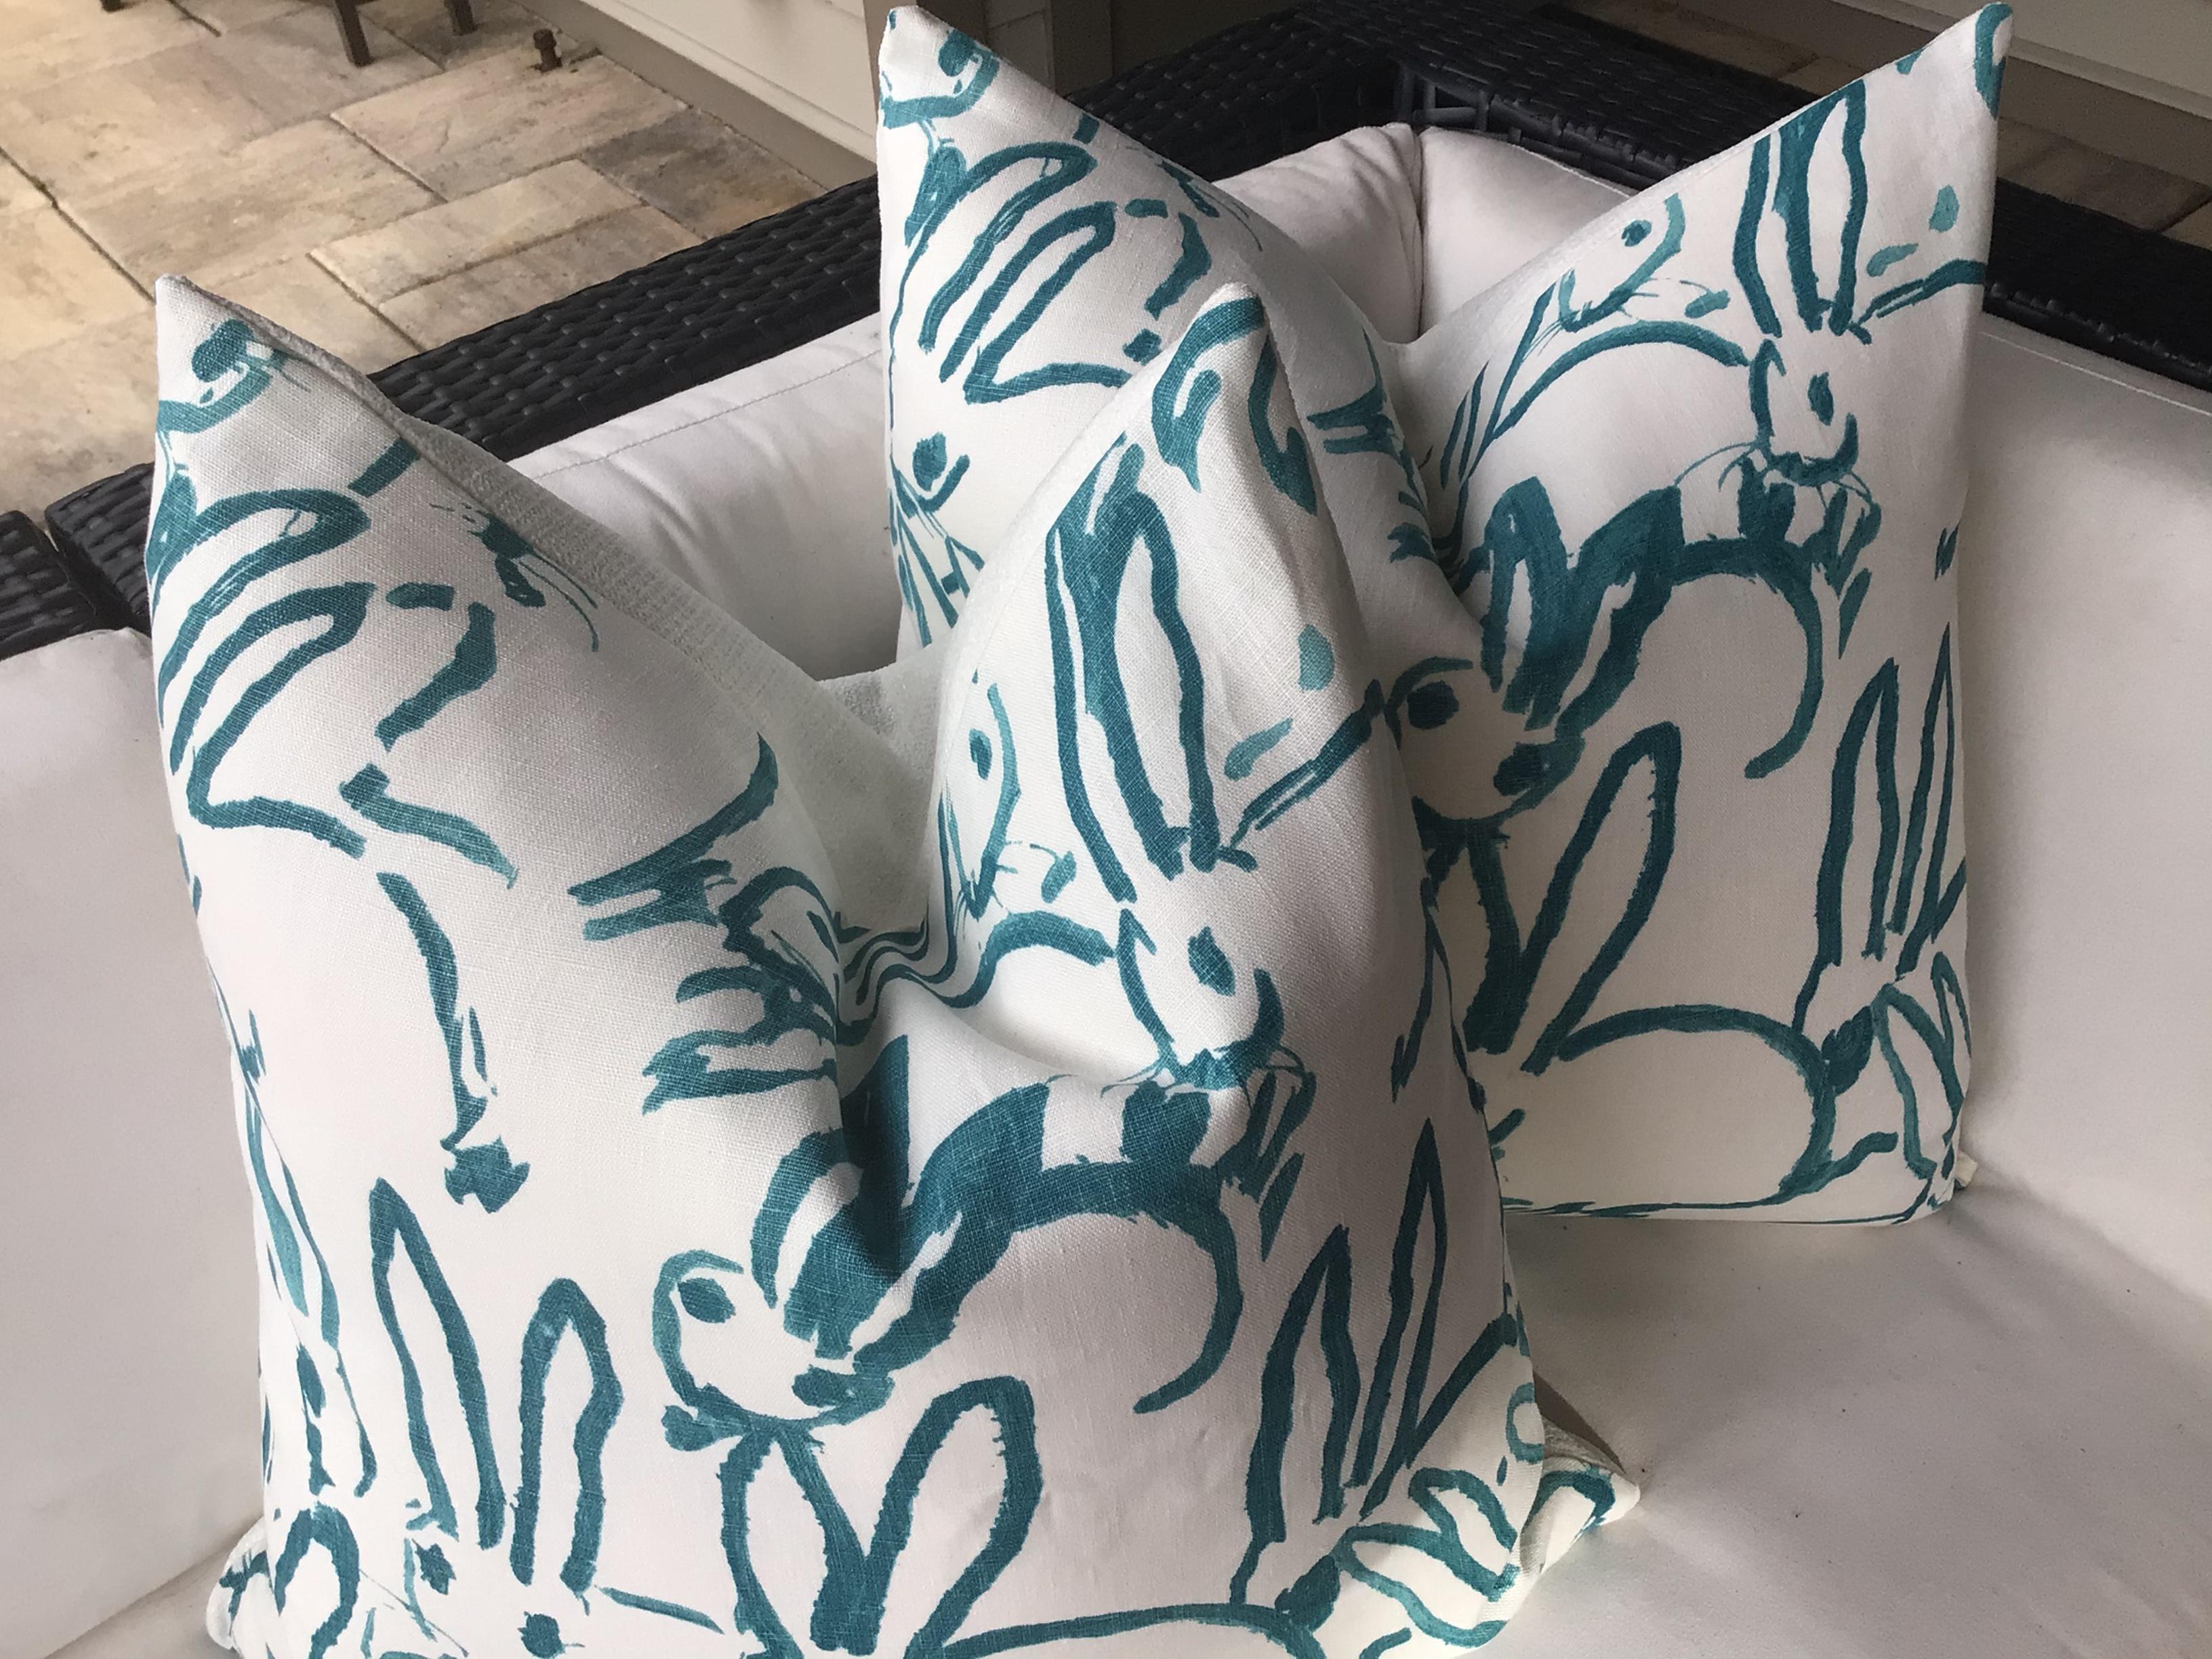 Nous sommes obsédés par ce tissu joyeux - dans toutes les couleurs et incarnations ! Groundworks by Lee Jofa propose un tissu en lin imprimé à la fois charmant et très sophistiqué. 